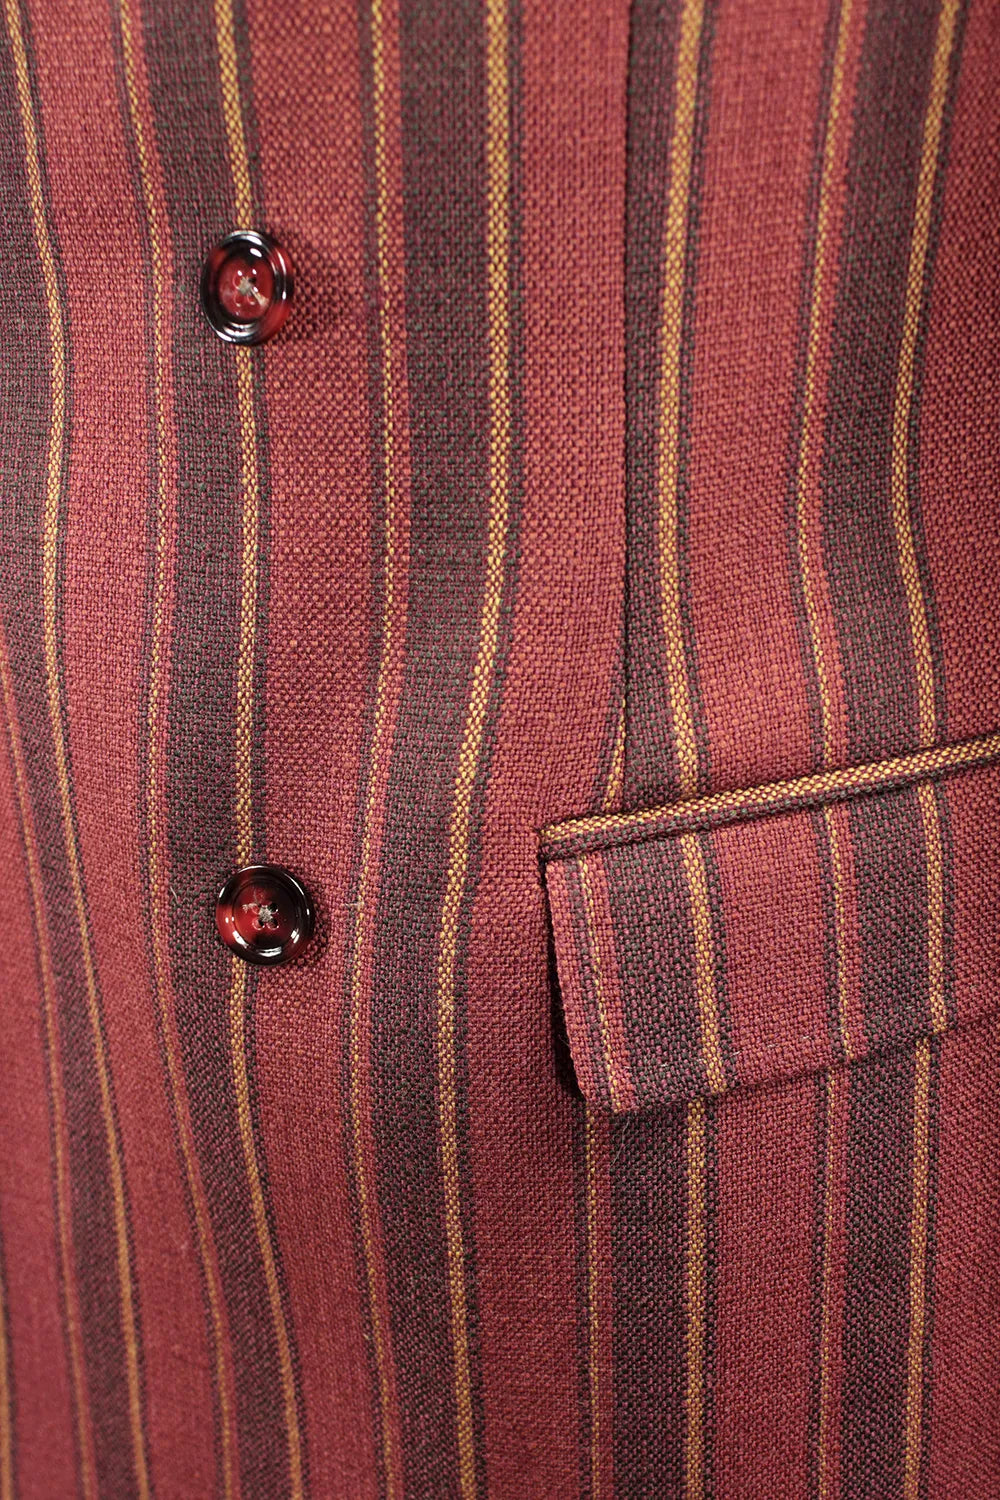 Giacca doppiopetto in lana rossa a righe bottoni